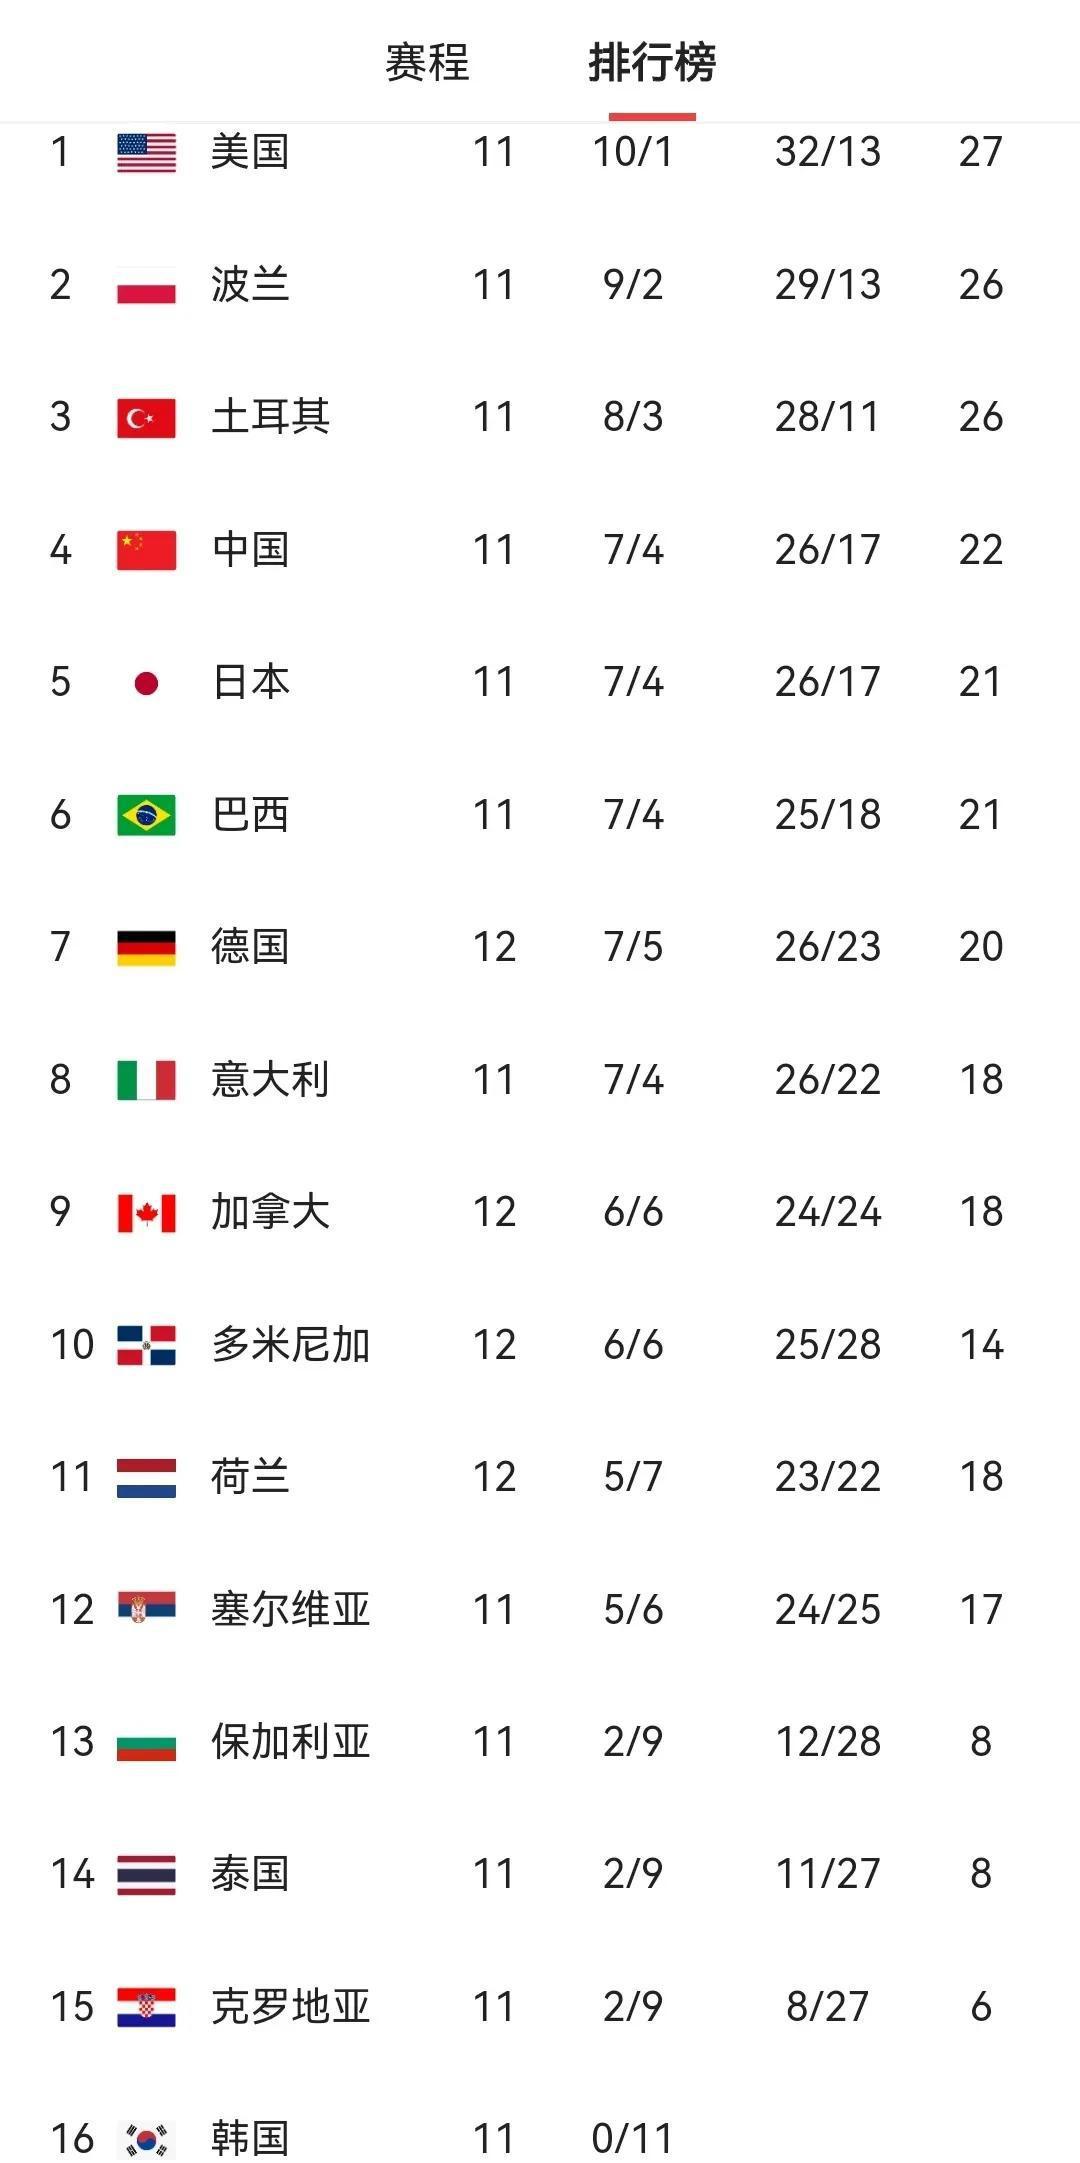 世界女排联赛积分榜最新变化
中国女排提前锁定总决赛席位
今天对阵榜首美国女排凶多(1)